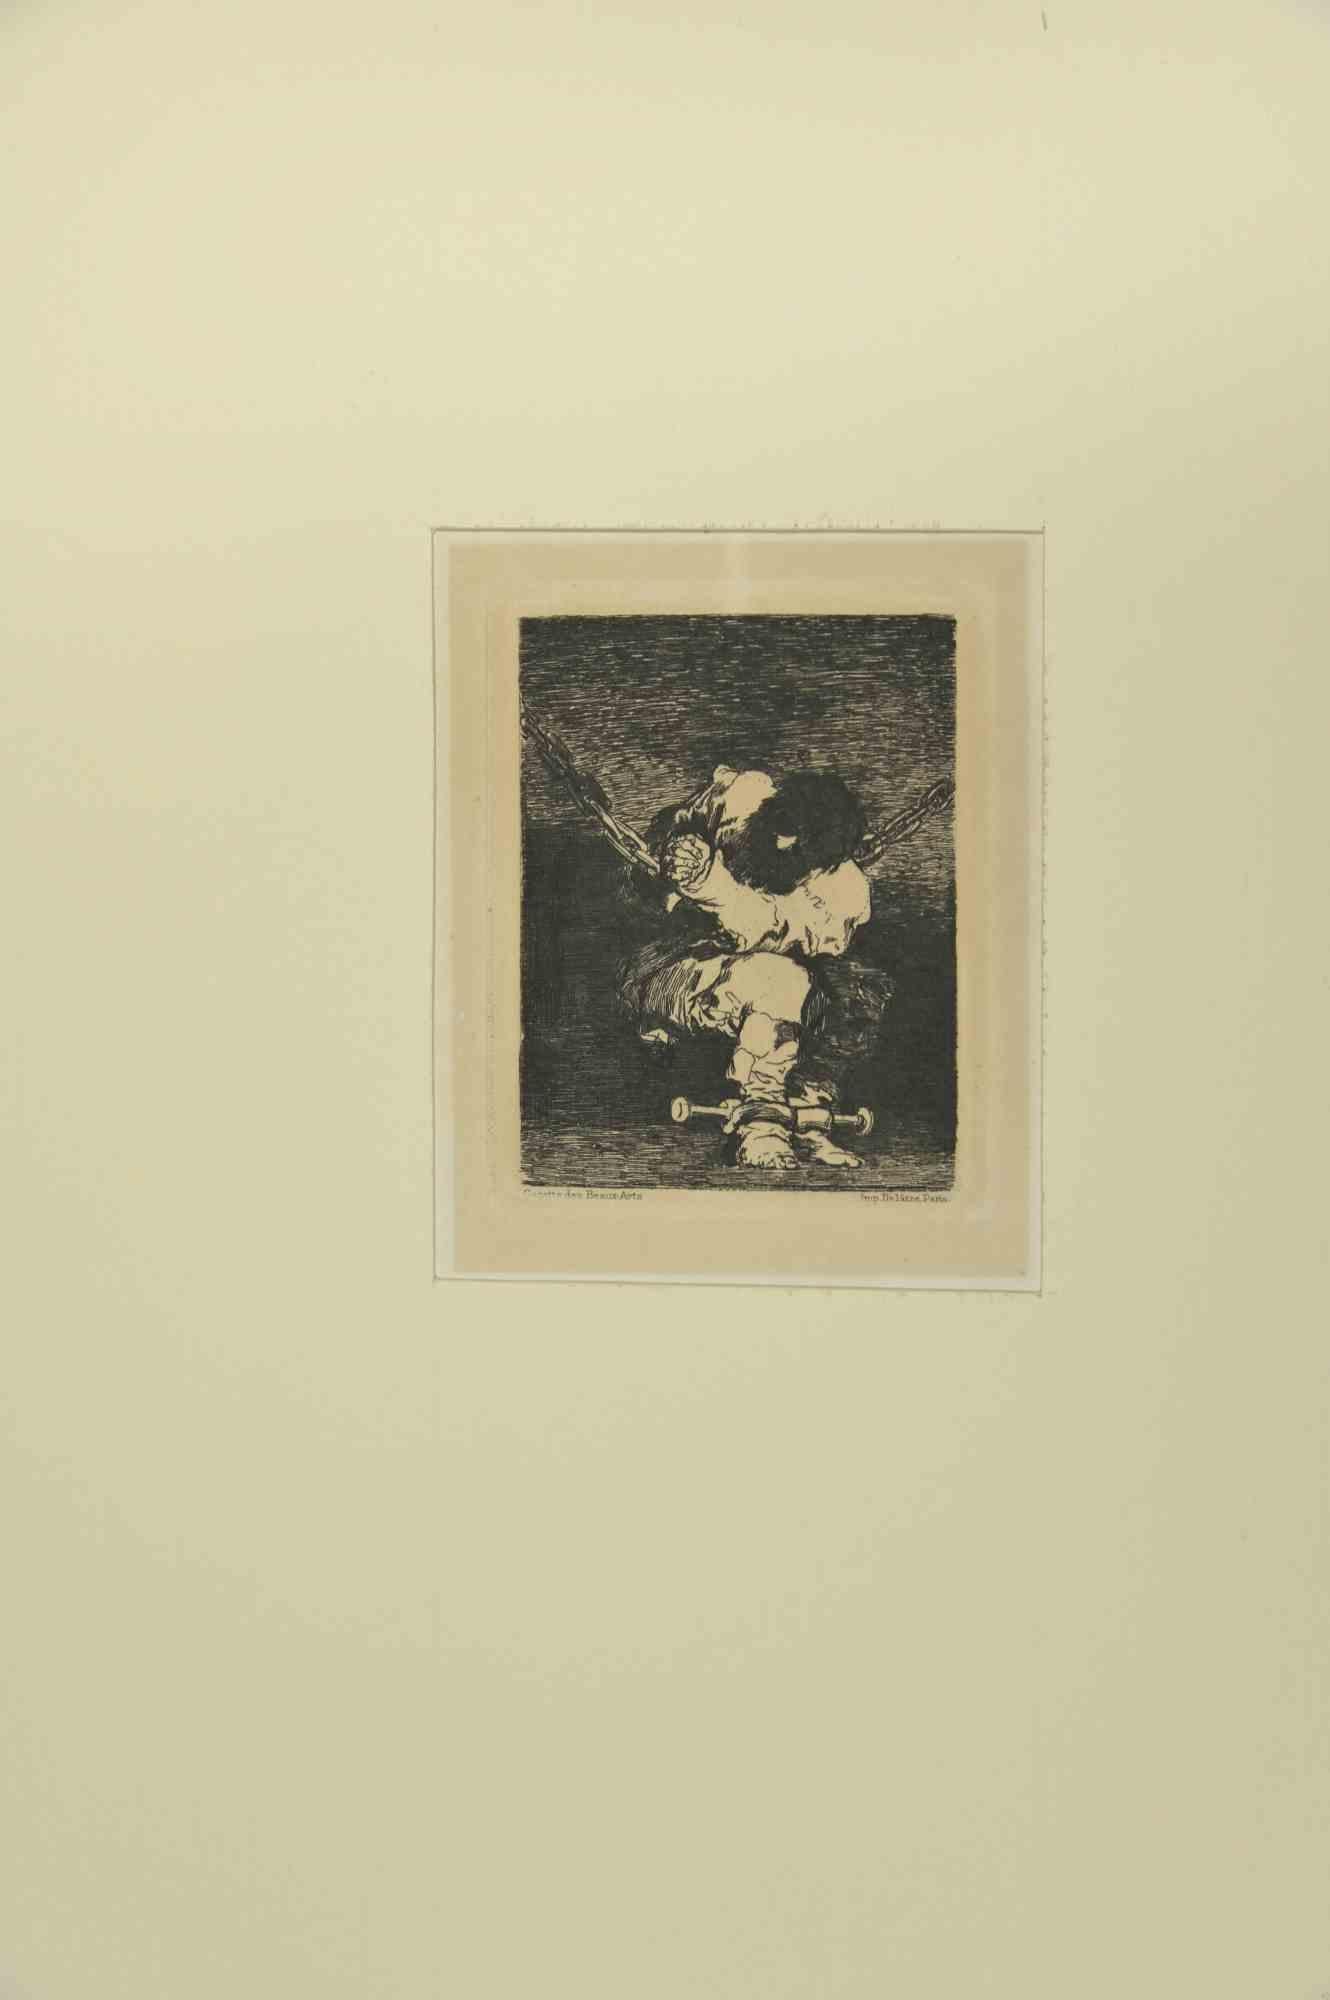 Der Schutz ist so barbarisch wie das Verbrechen (Tan barbara la seguridad como el delito) ist ein Kunstwerk von Francisco Goya y Lucientes aus dem Jahr 1867. 

Paris: Delâtre, 1867.

Radierung und Stichel.

cm. 10.5x8.4.Blatt